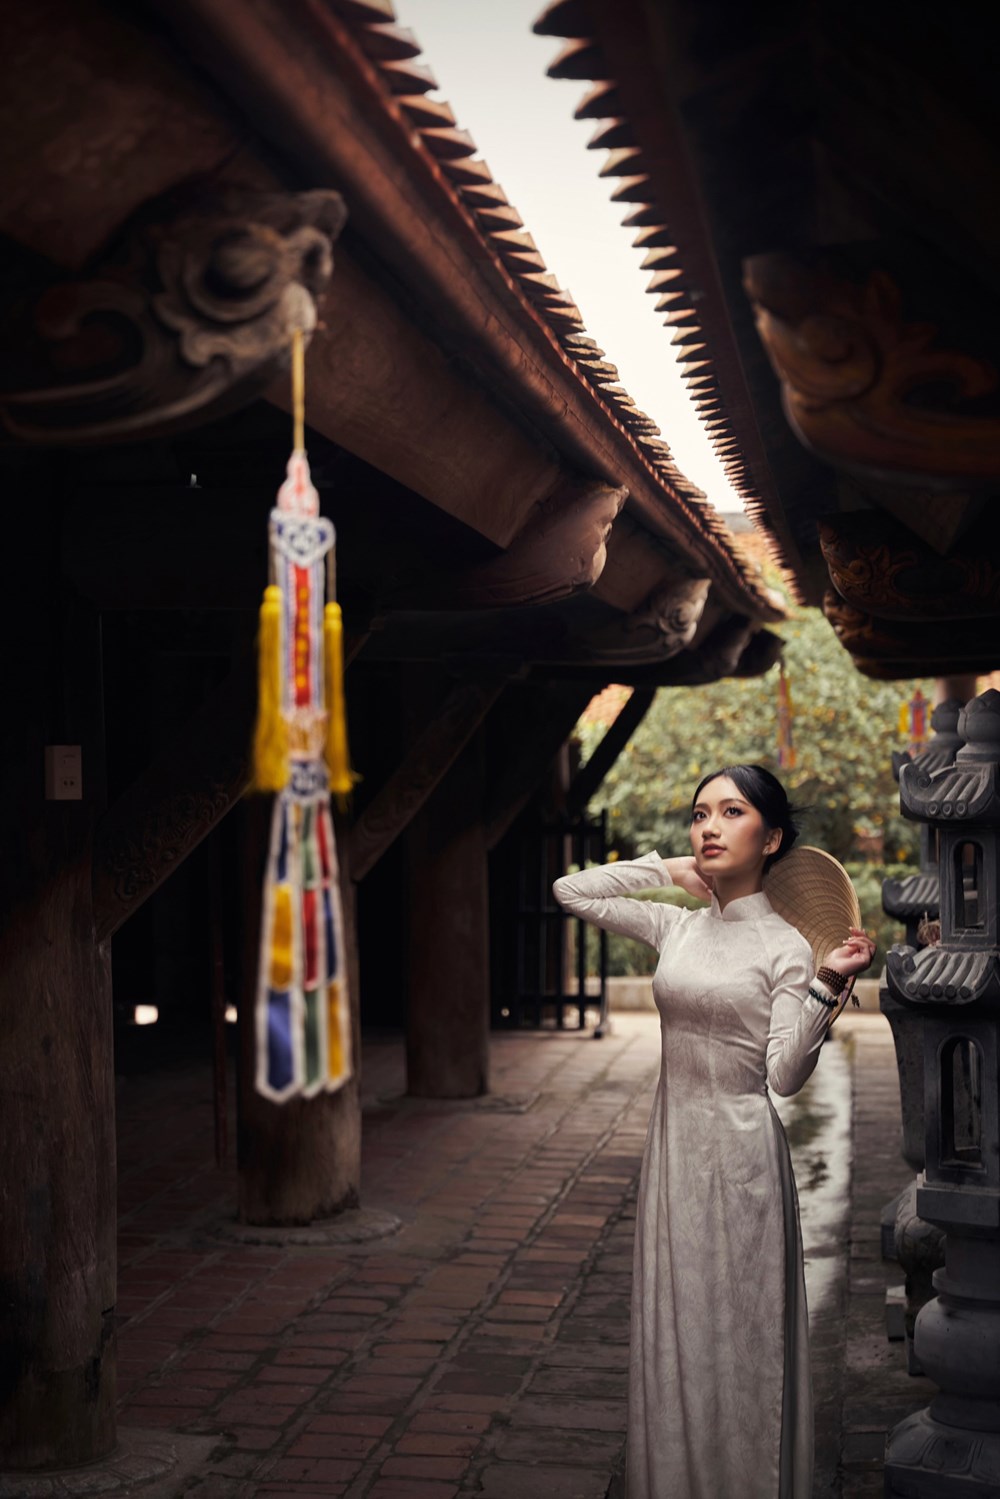 “Đại sứ Sinh viên du lịch năm 2024” đẹp nền nã trong bộ áo dài trắng tinh khôi ở chùa Keo - ảnh 10